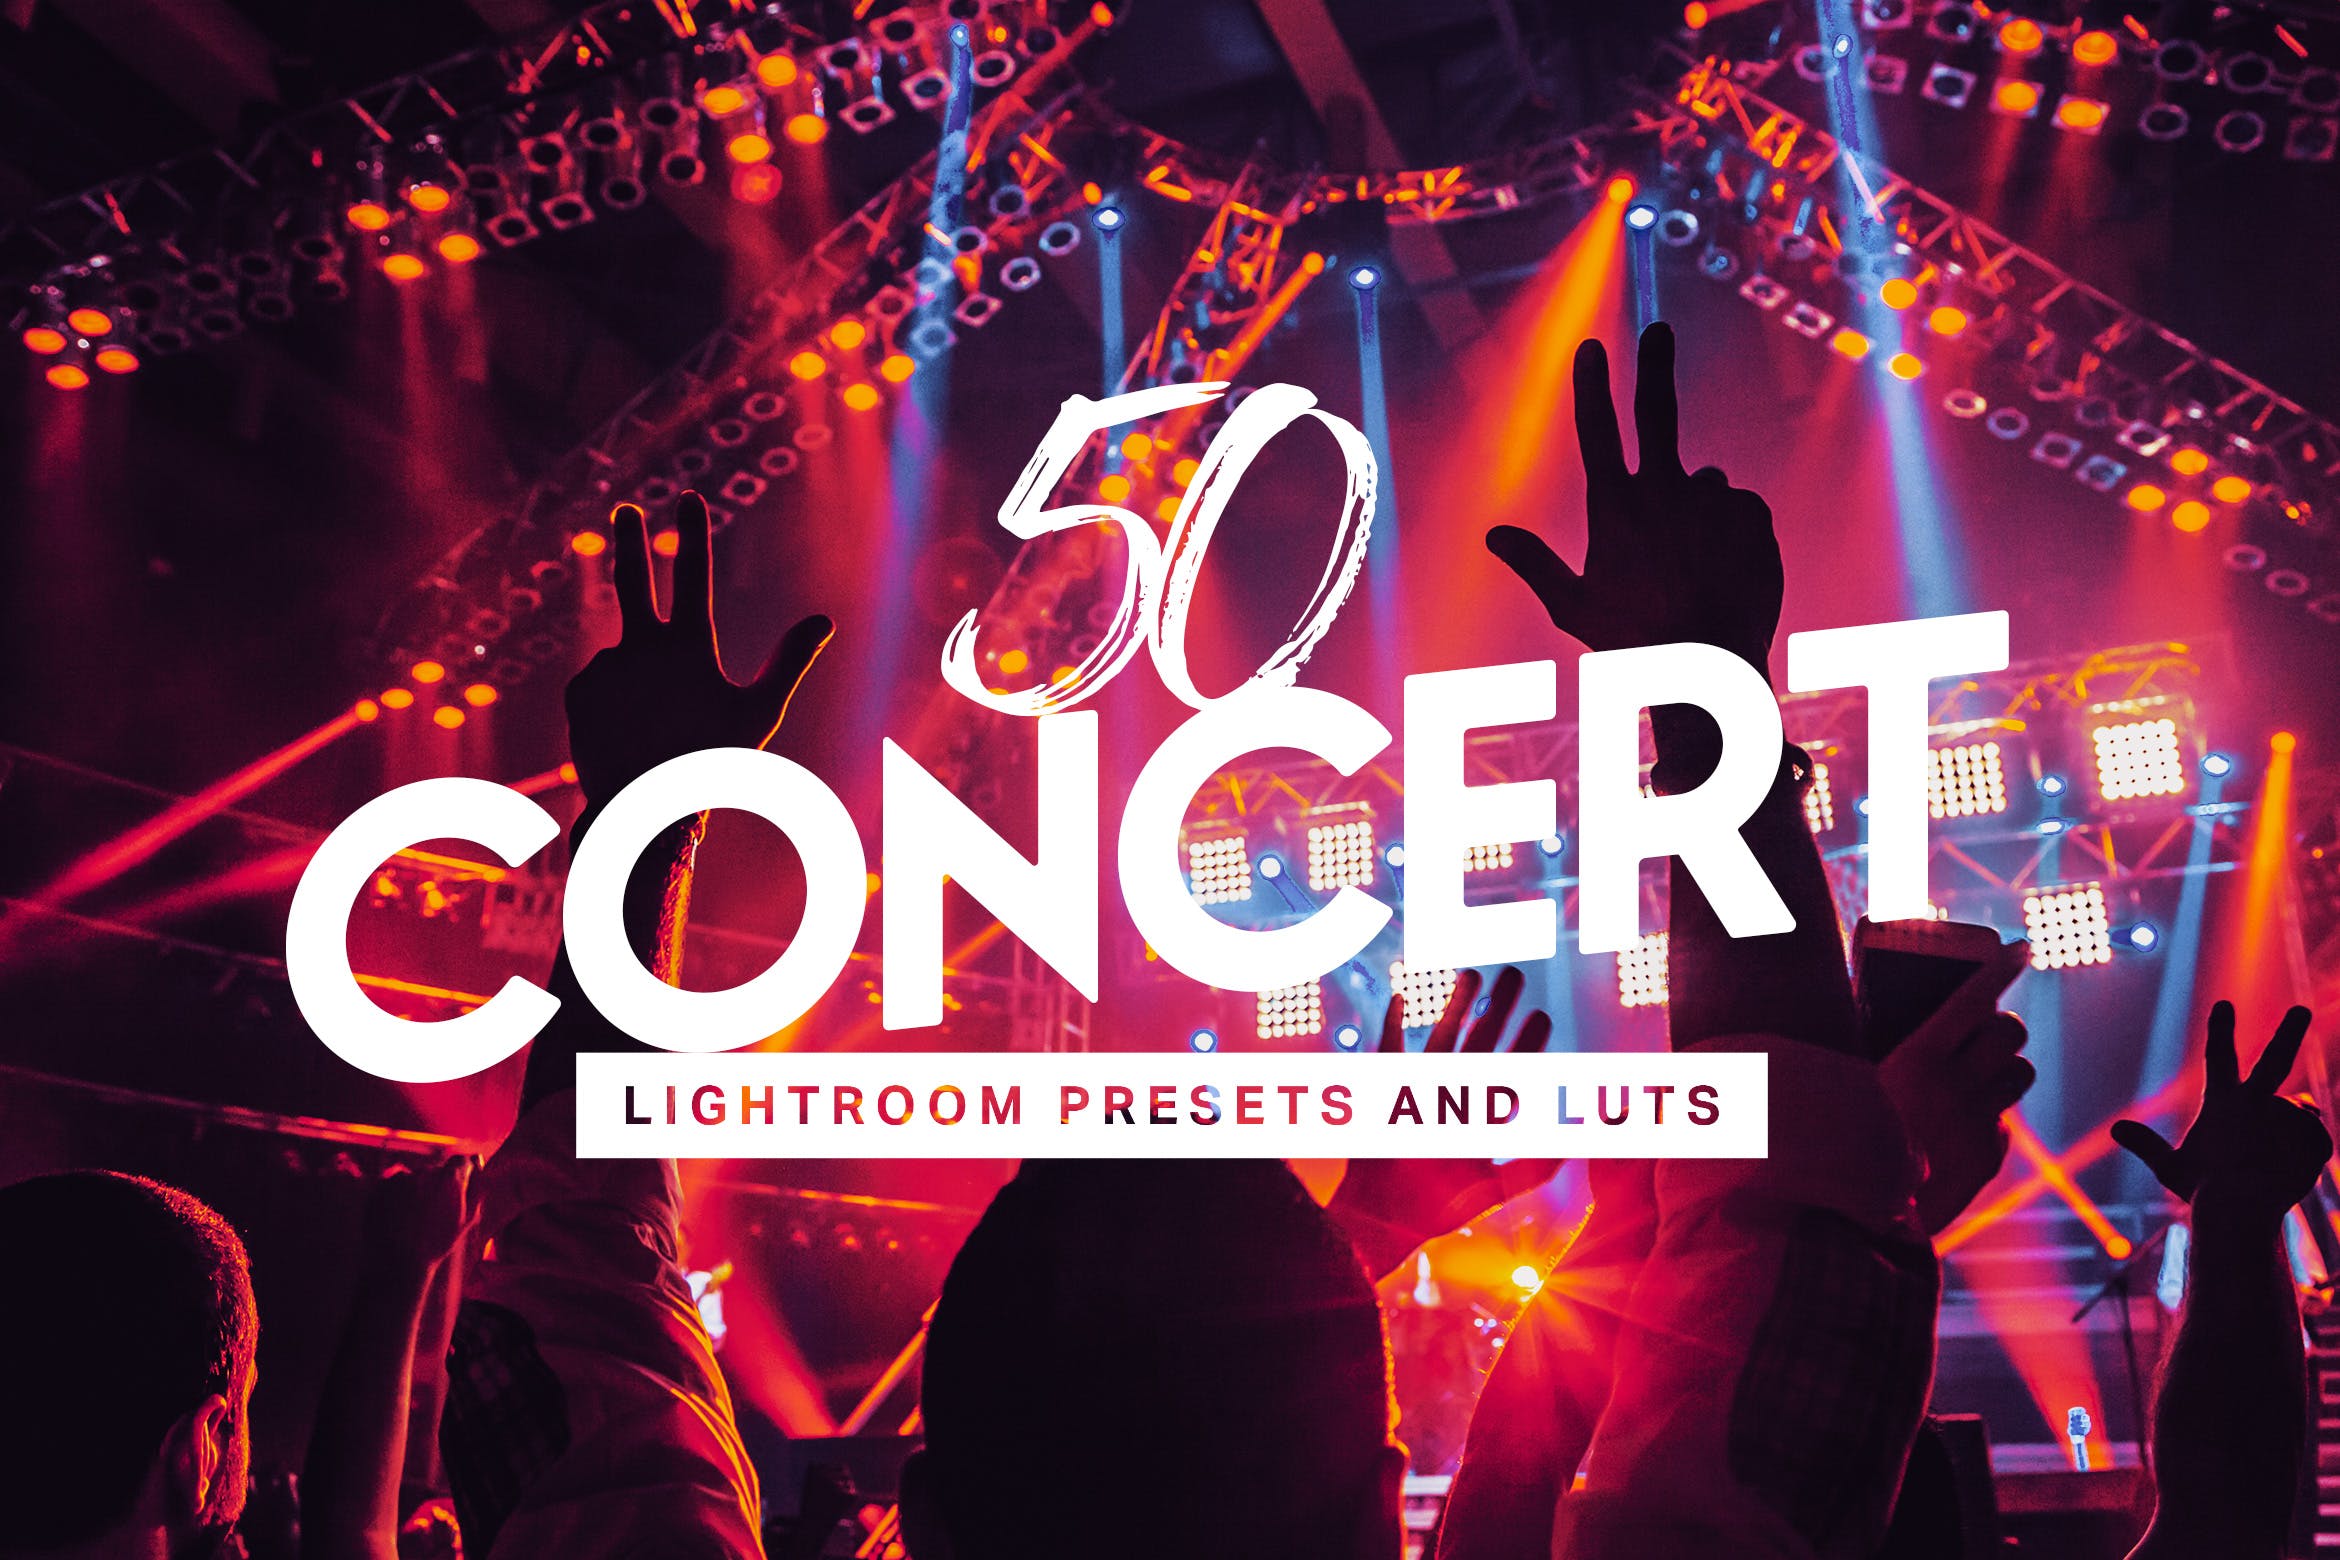 50款音乐节/演唱会等夜间表演场景照片16设计素材网精选LR预设 50 Concert Lightroom Presets LUTs插图